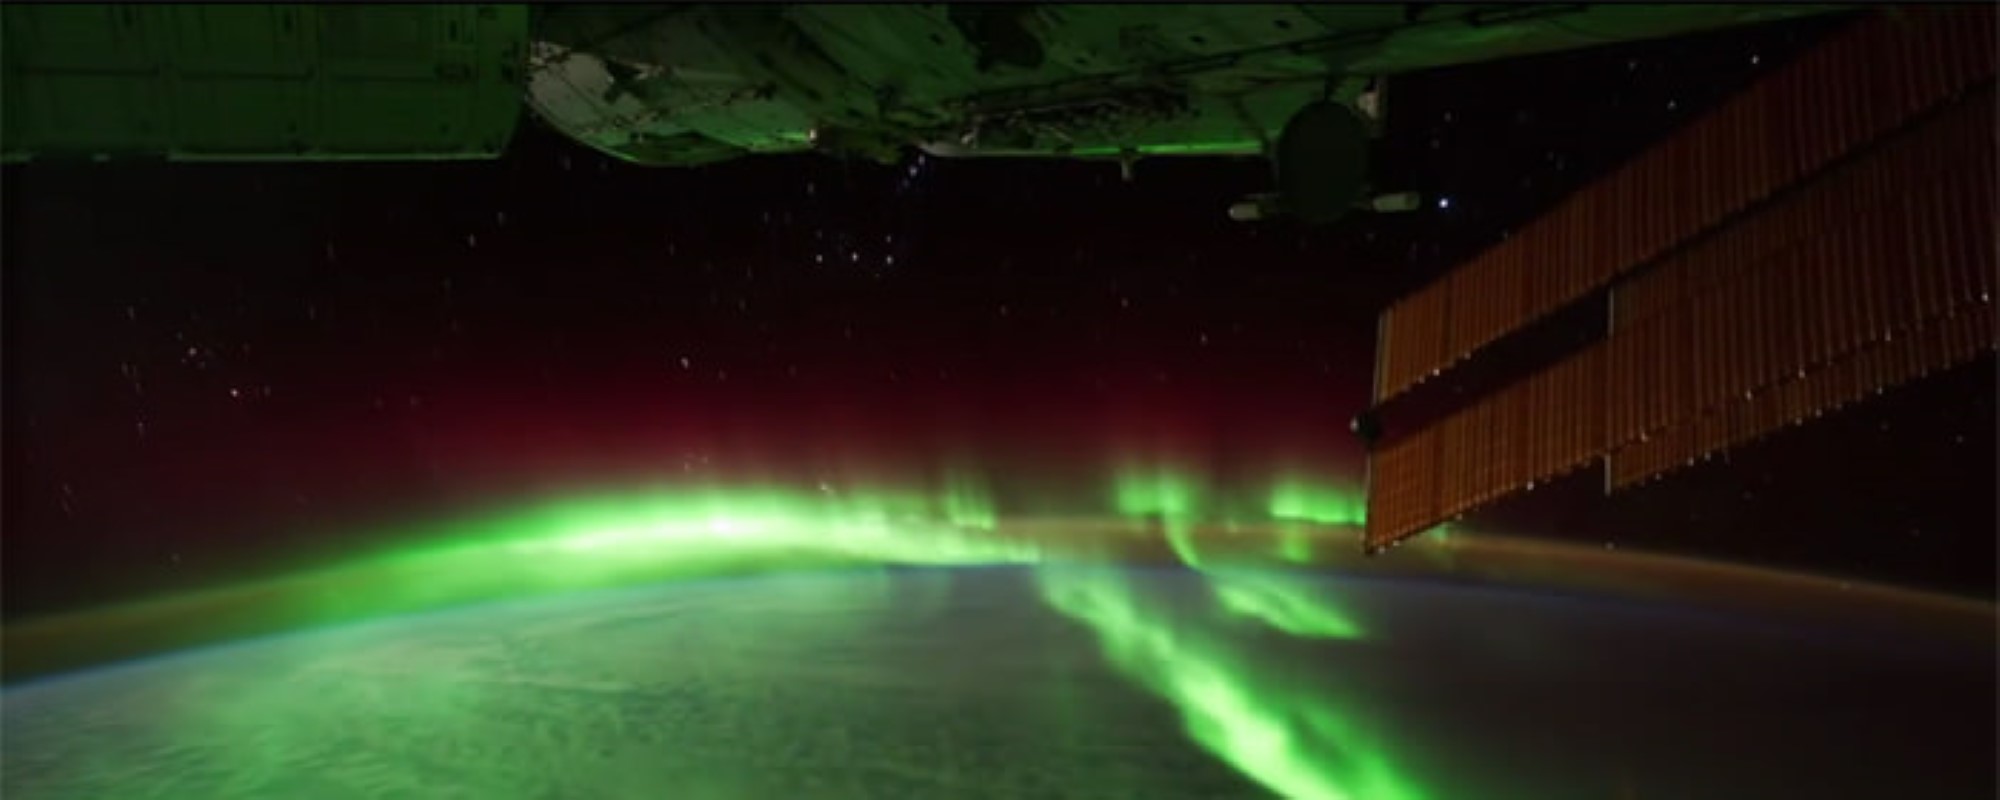 Aufnahme der Erde von der ISS aus